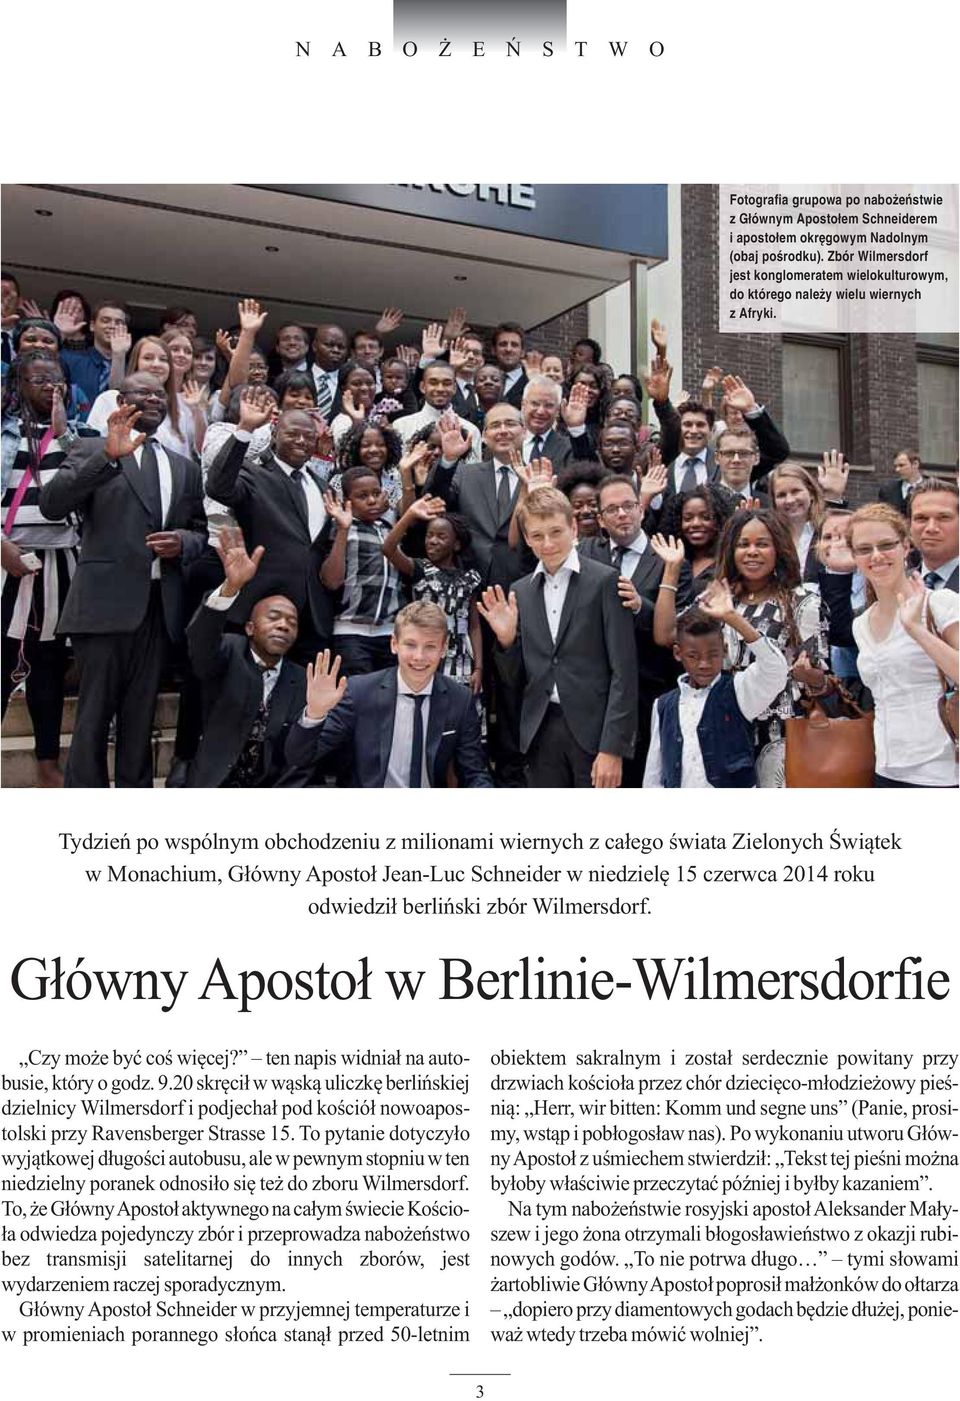 Tydzień po wspólnym obchodzeniu z milionami wiernych z całego świata Zielonych Świątek w Monachium, Główny Apostoł Jean-Luc Schneider w niedzielę 15 czerwca 2014 roku odwiedził berliński zbór